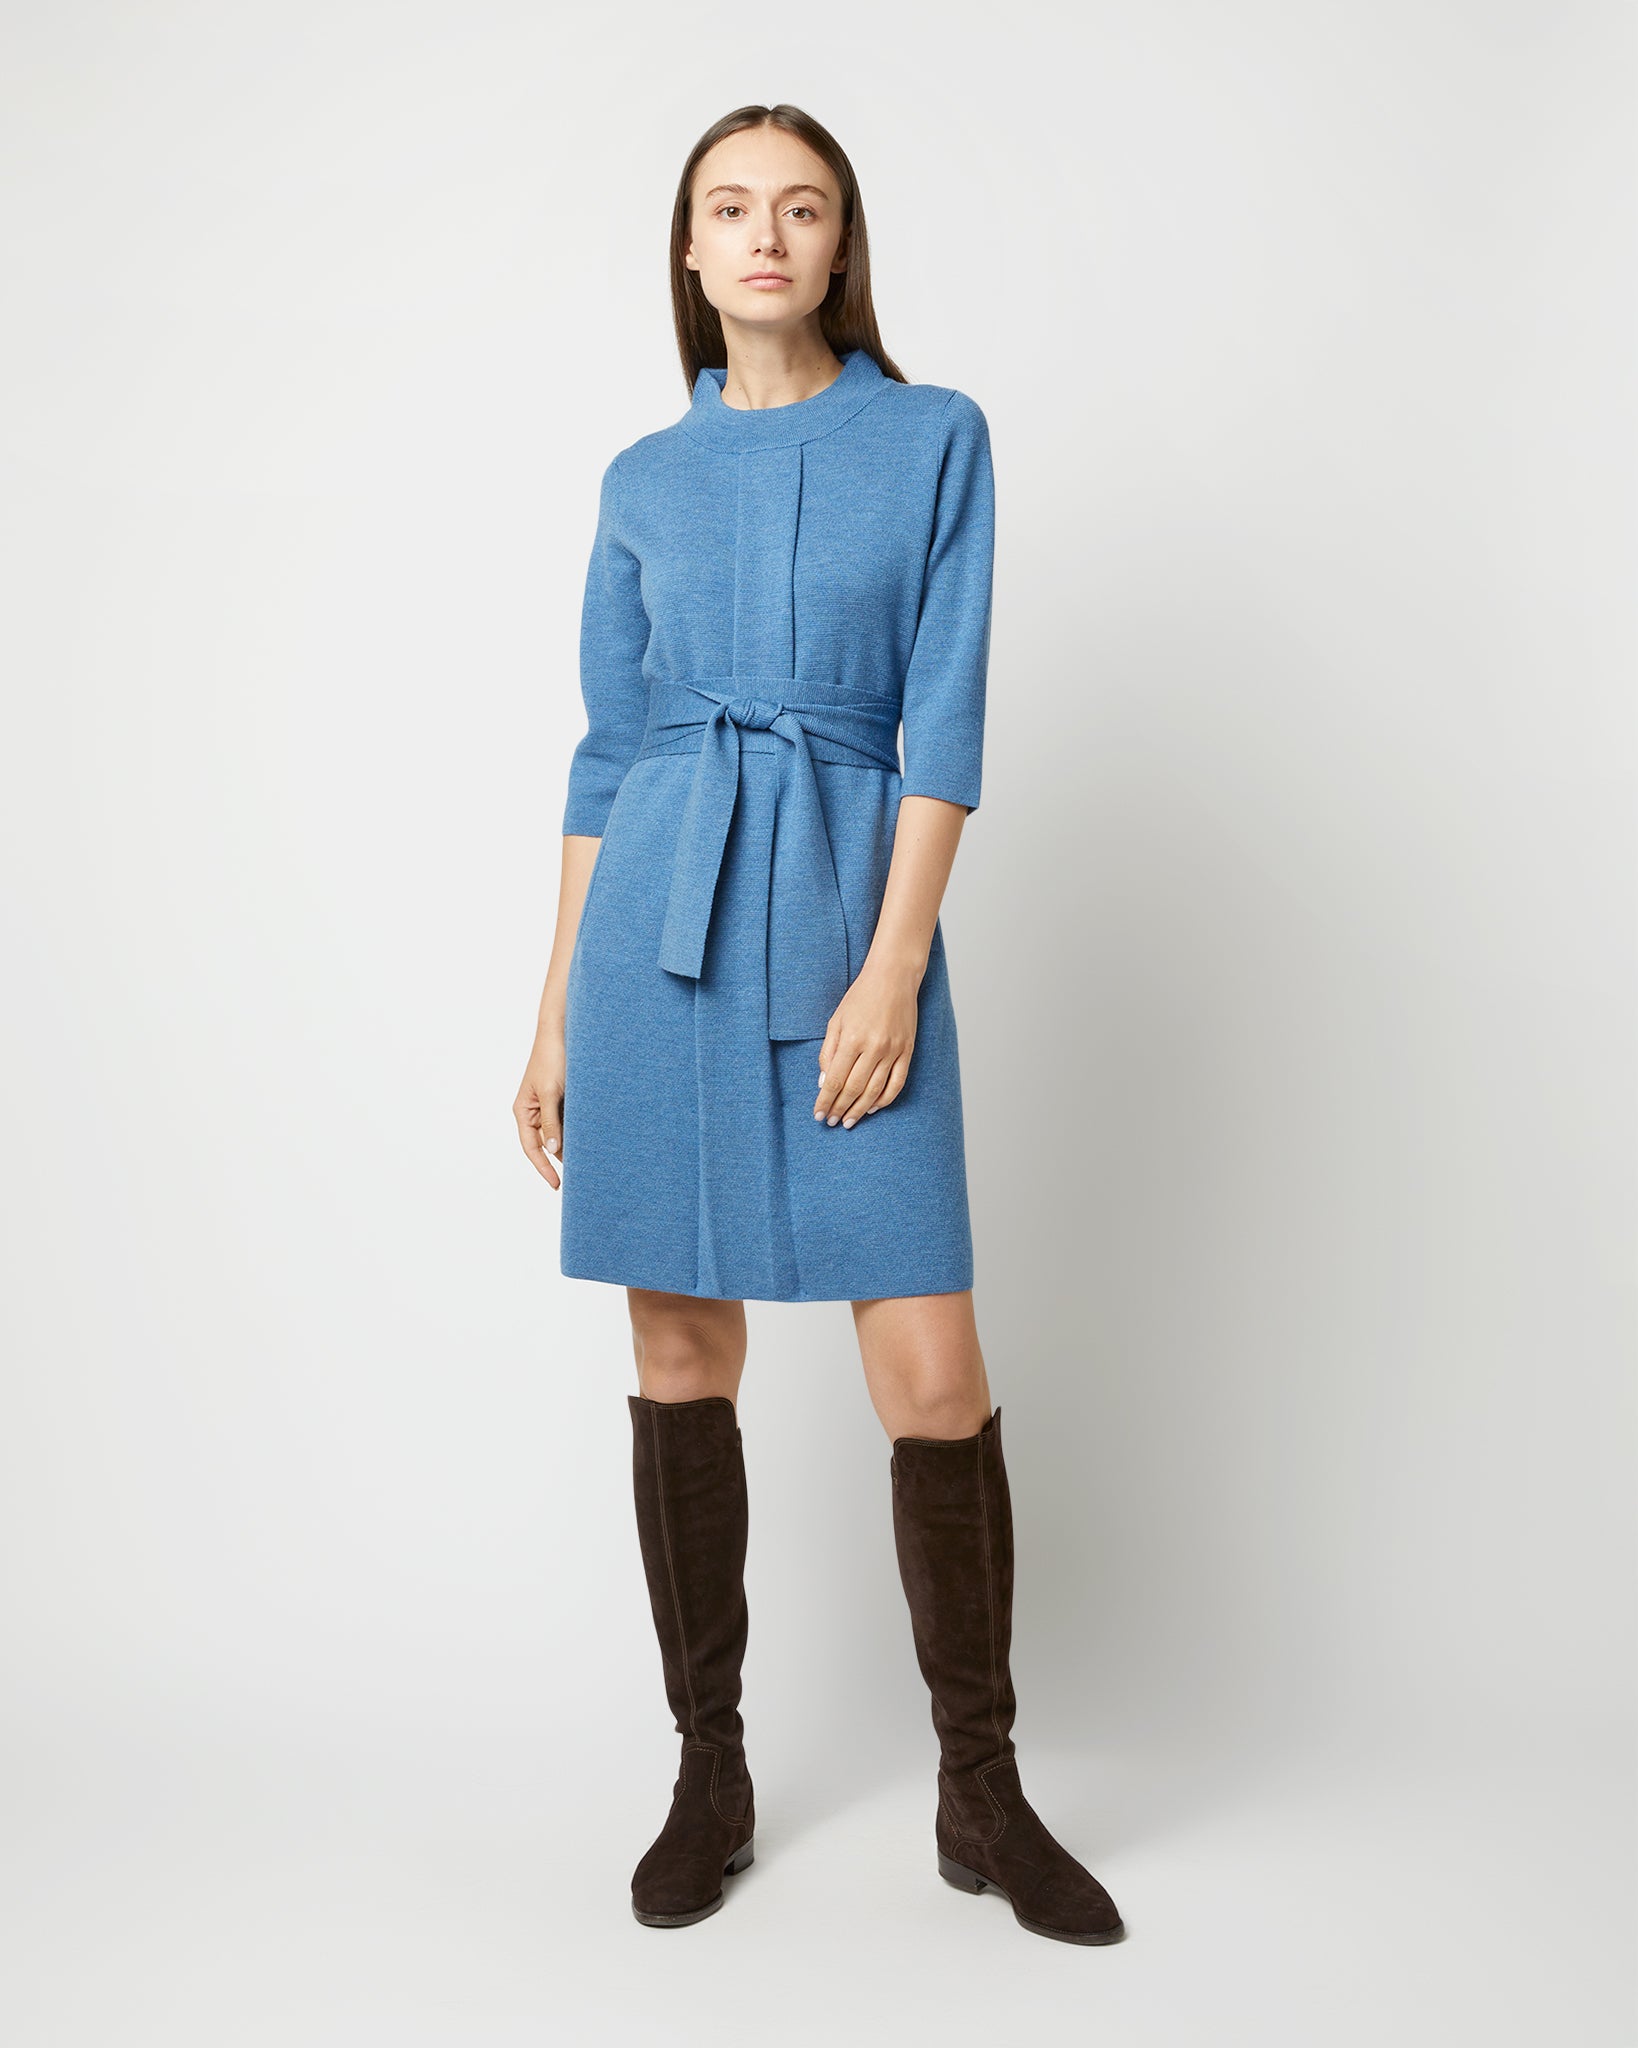 Felice Dress in Mid Heather Blue Merino Wool